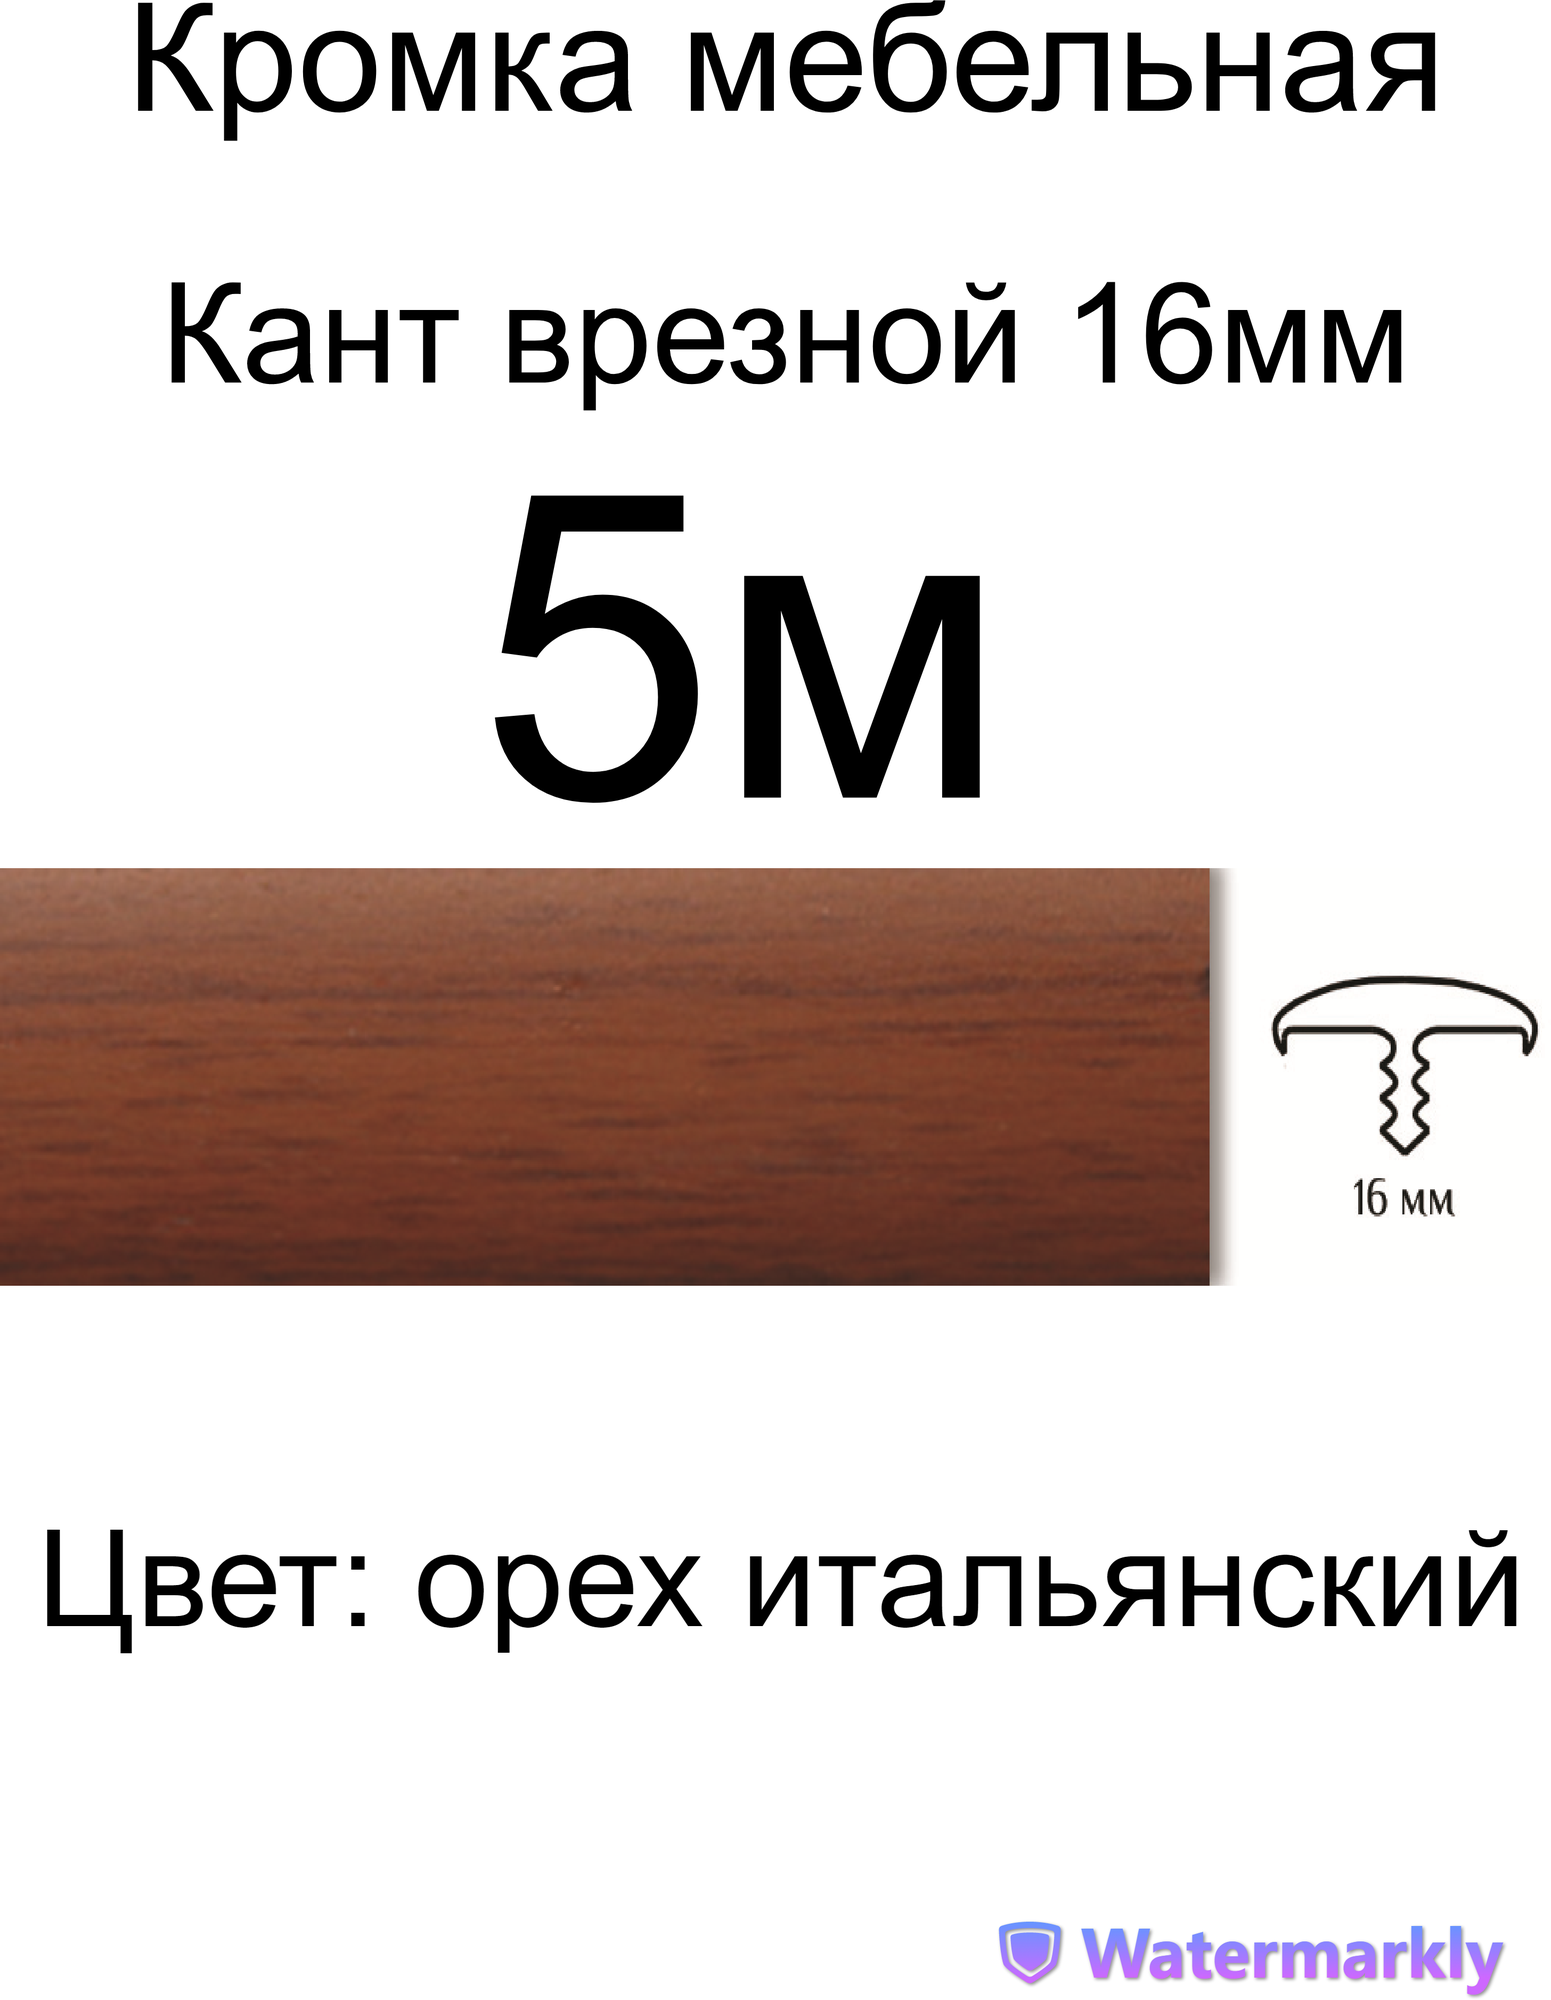 Мебельный Т-образный профиль(5 метров) кант на ДСП 16мм, врезной, цвет: орех итальянский